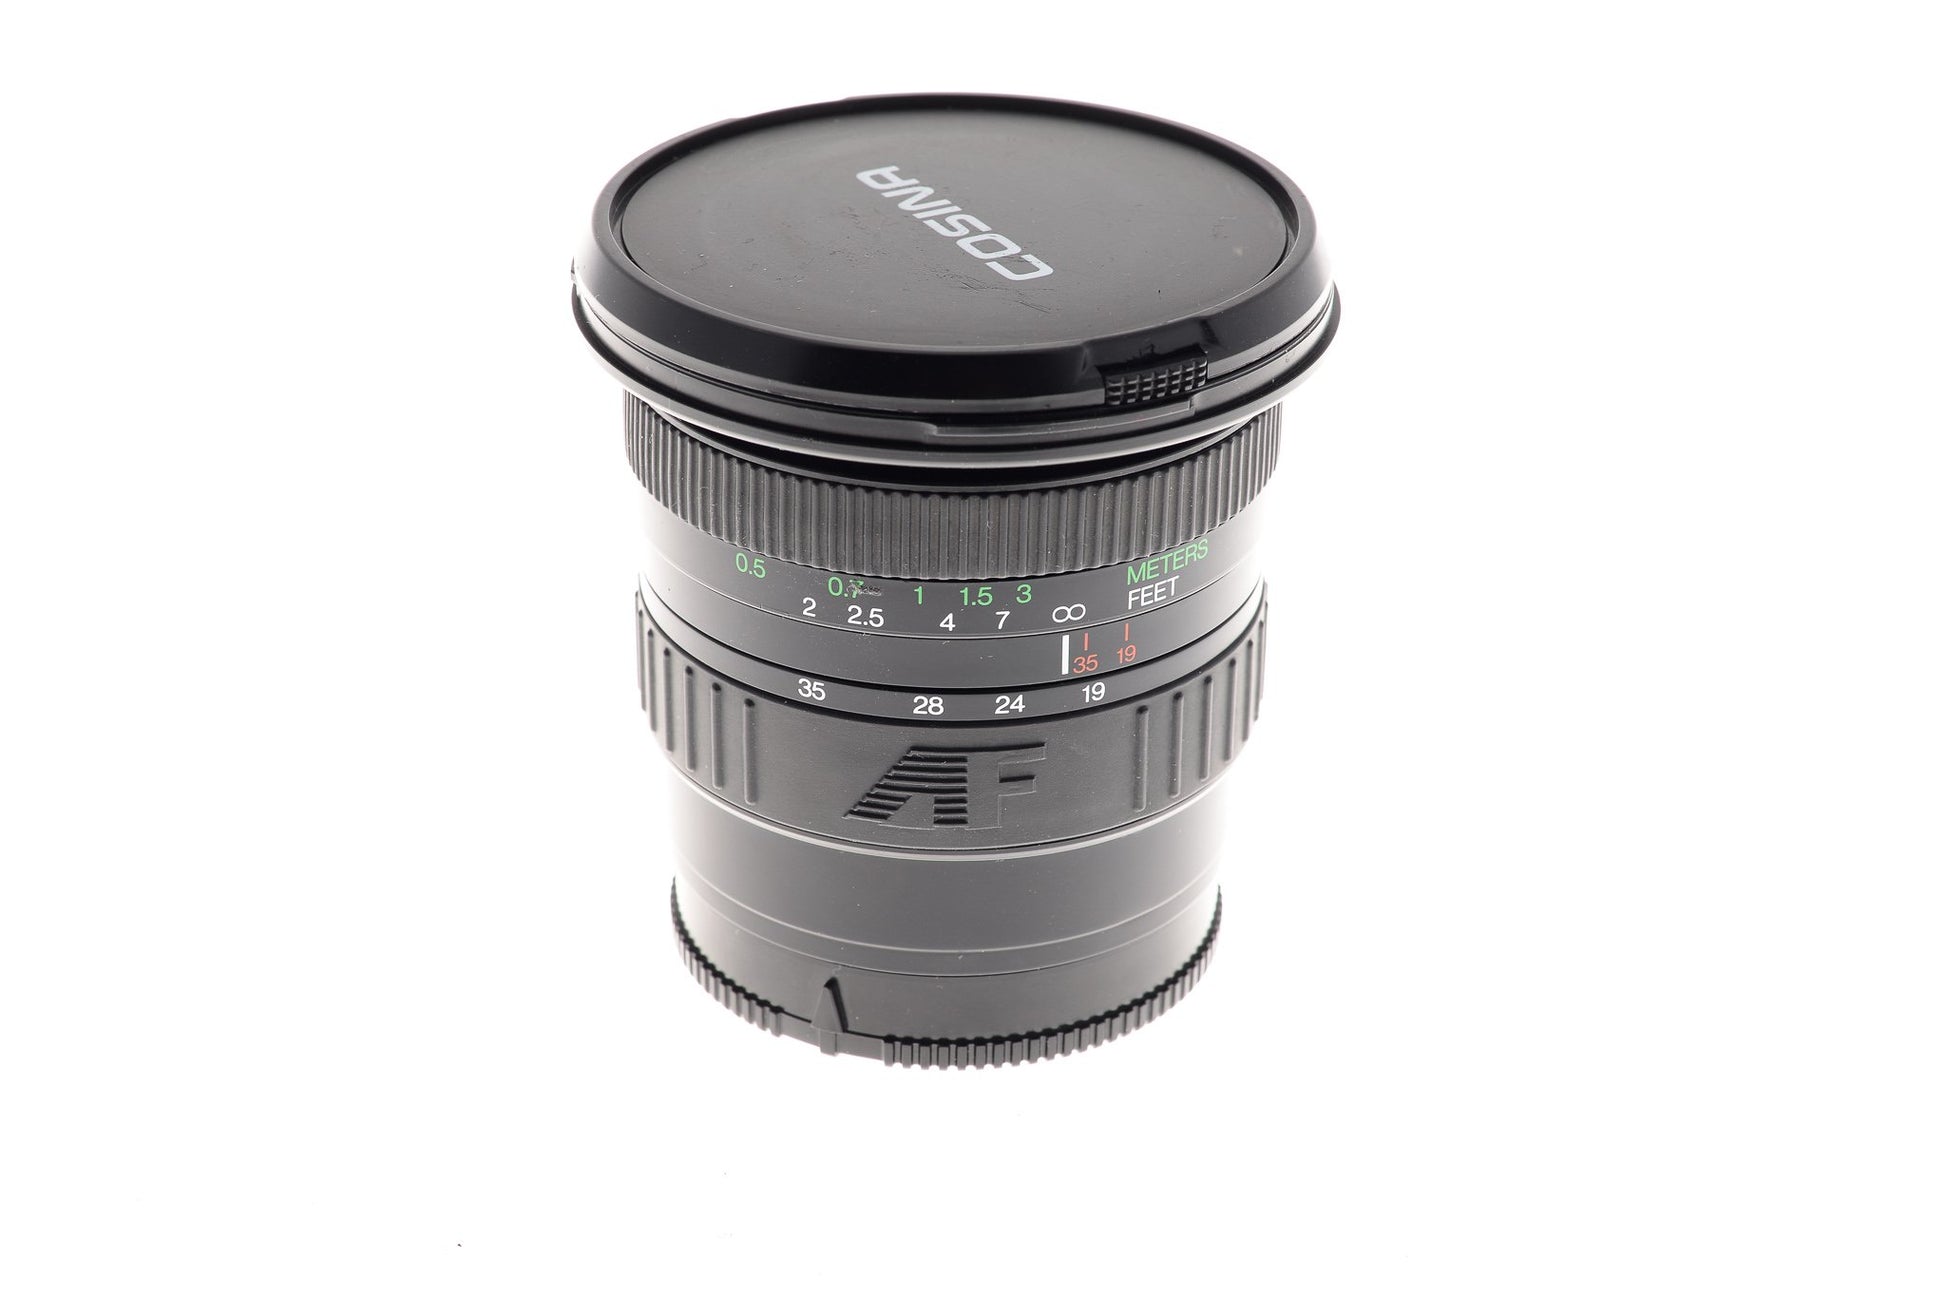 Cosina 19-35mm f3.5-4.5 MC - Lens